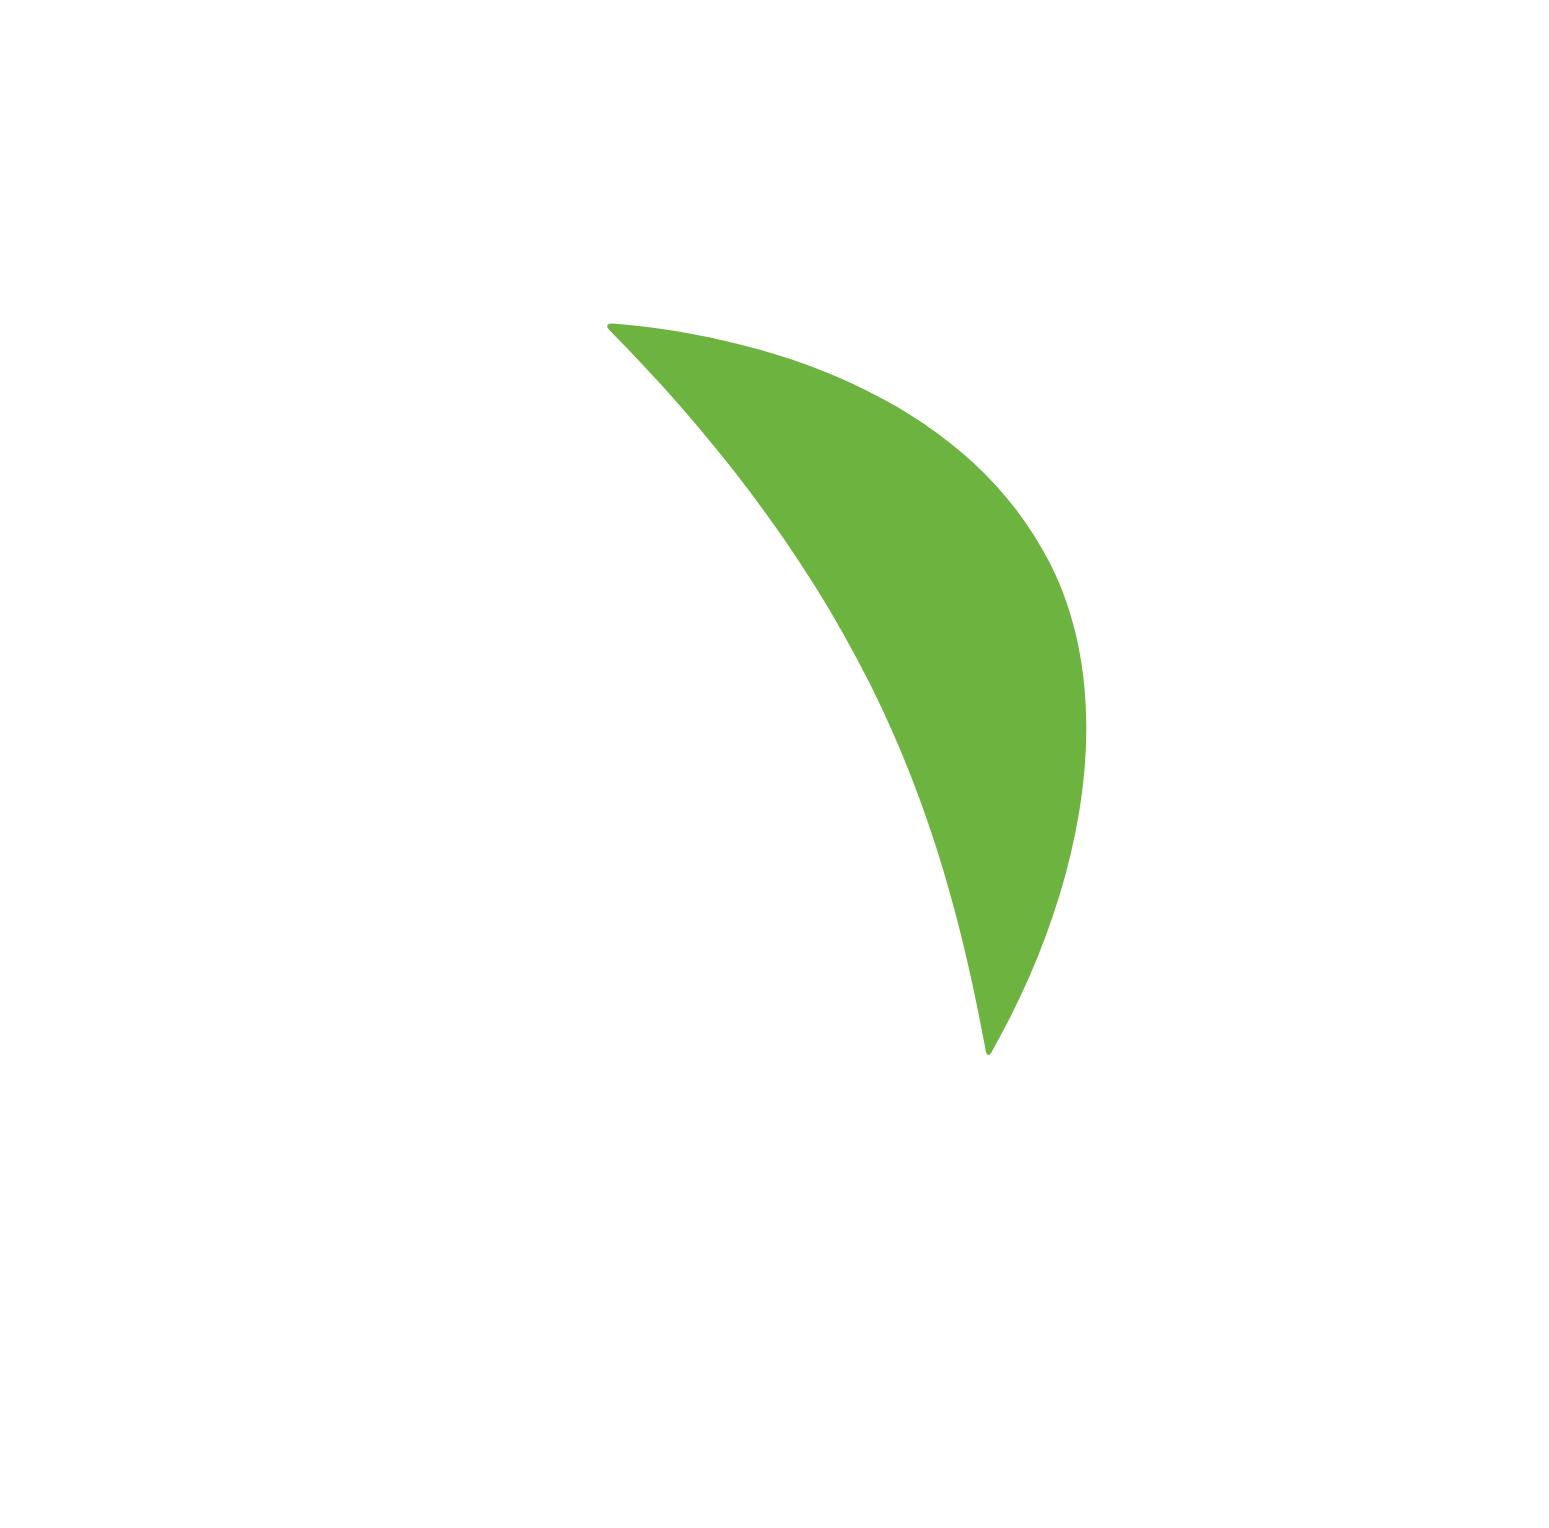 Sysco logo pour fonds sombres (PNG transparent)